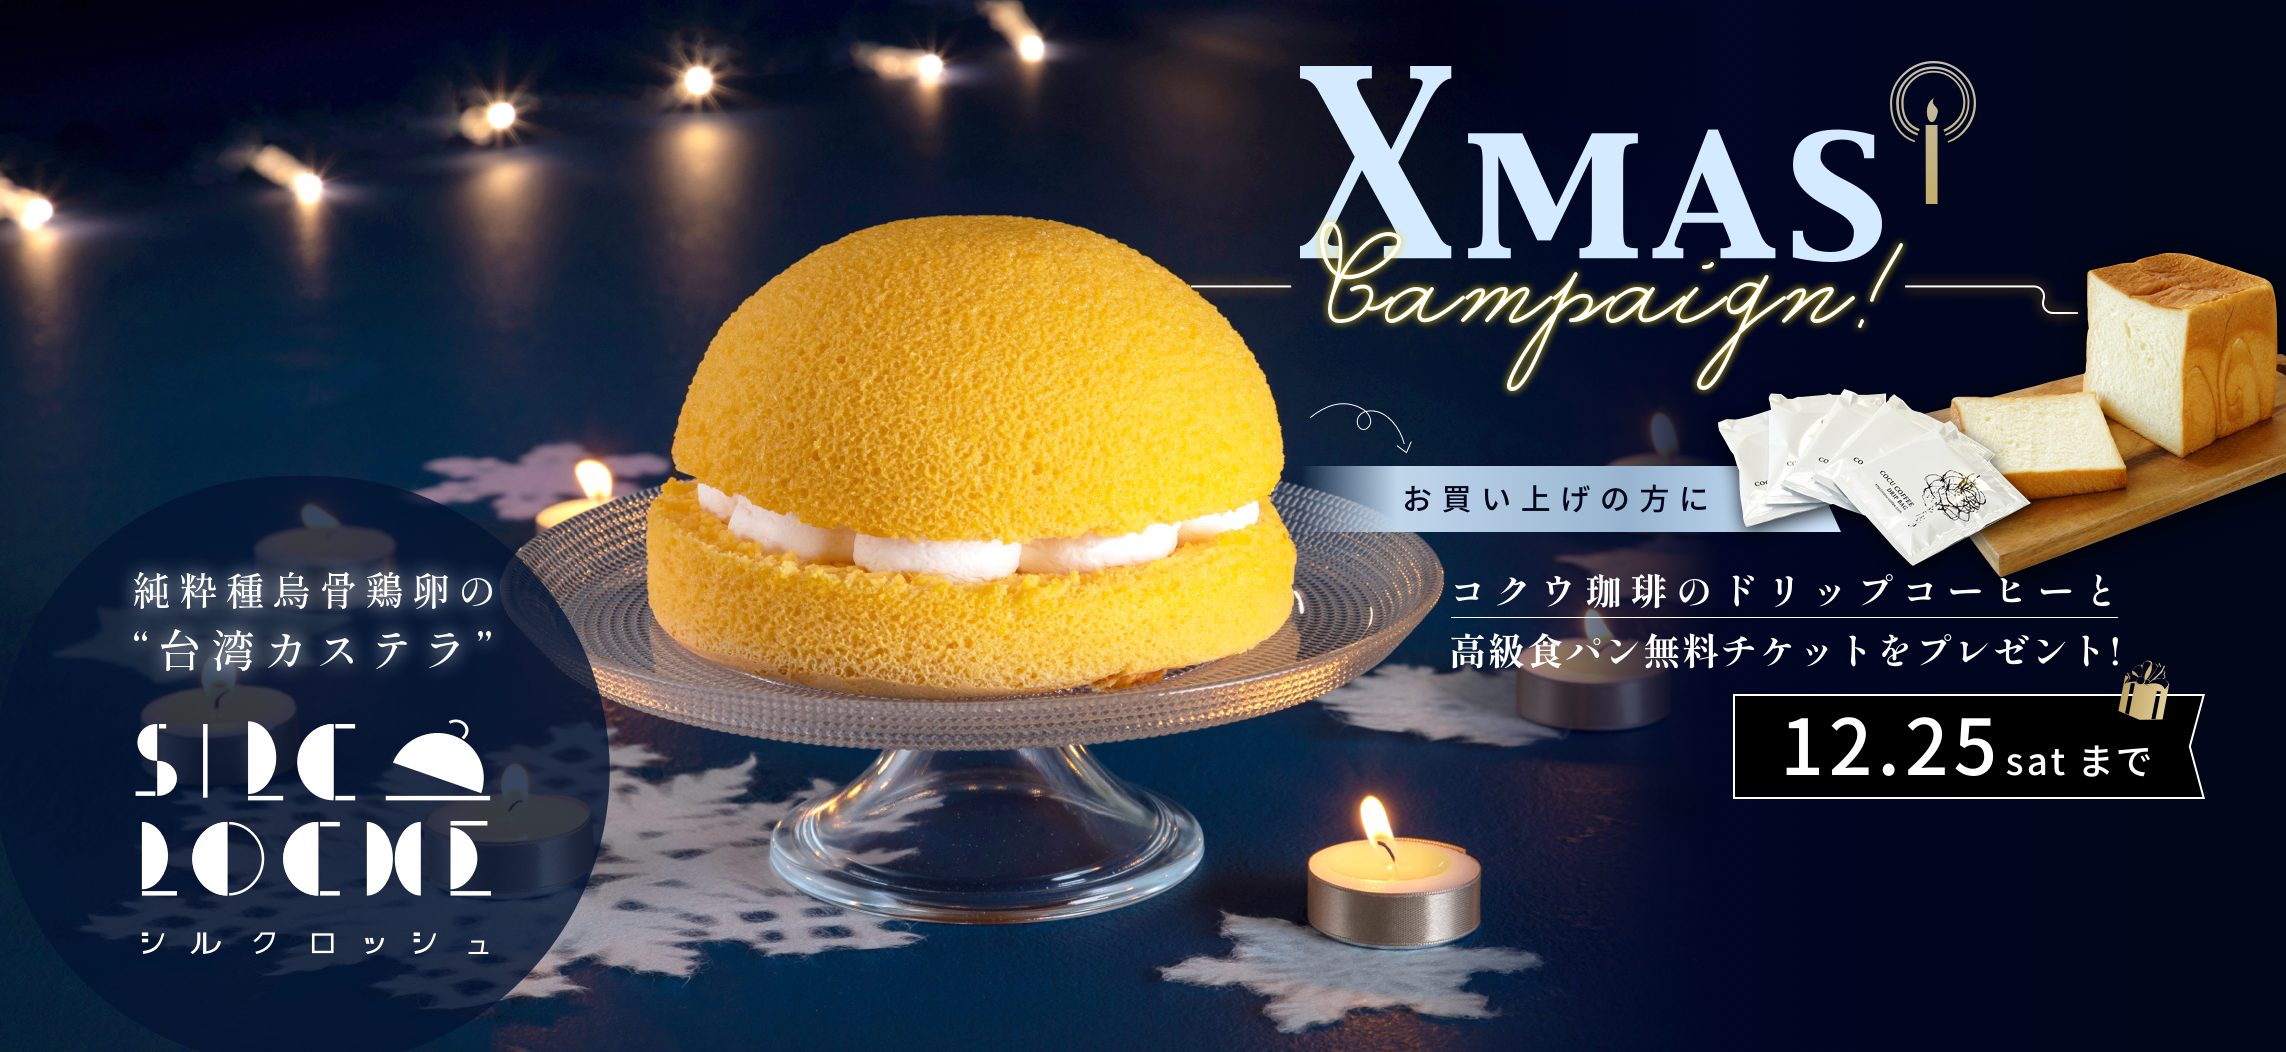 【Xmasキャンペーン】完売必至の台湾カステラ「シルクロッシュ」ご購入で、高級食パンのお試し無料チケットとドリップコーヒーが特典でついてくるキャンペーンがスタート！のサブ画像1